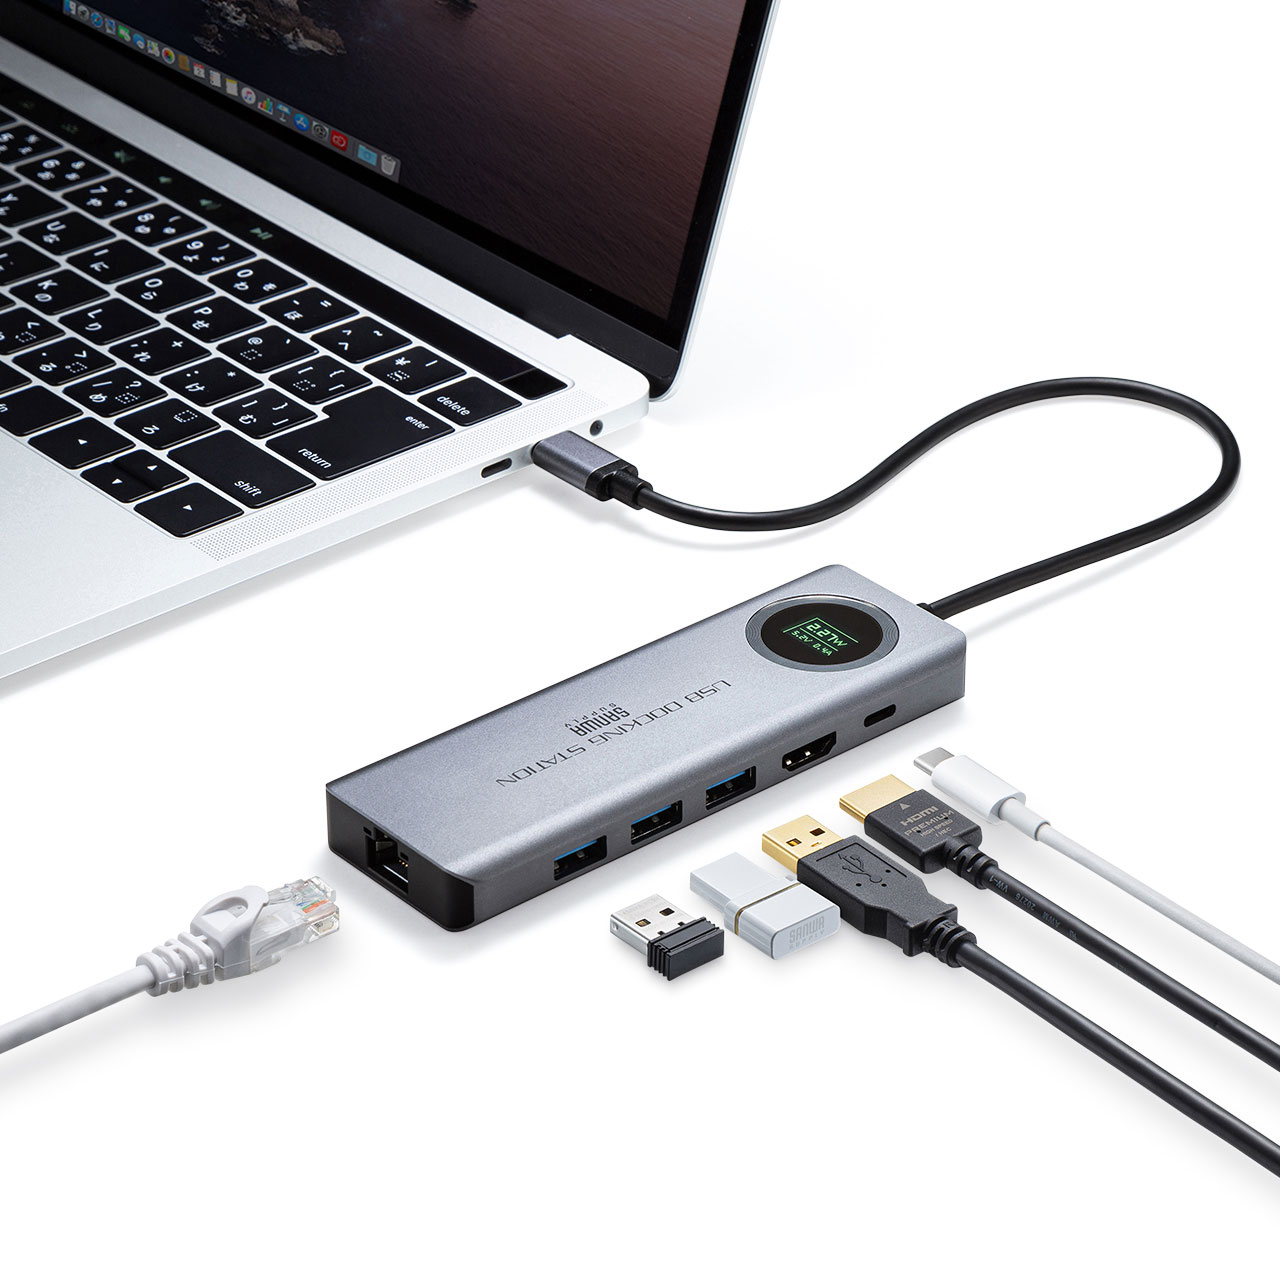 電圧・電流チェッカーを搭載したドッキングステーション「USB-DKM1」が発売中